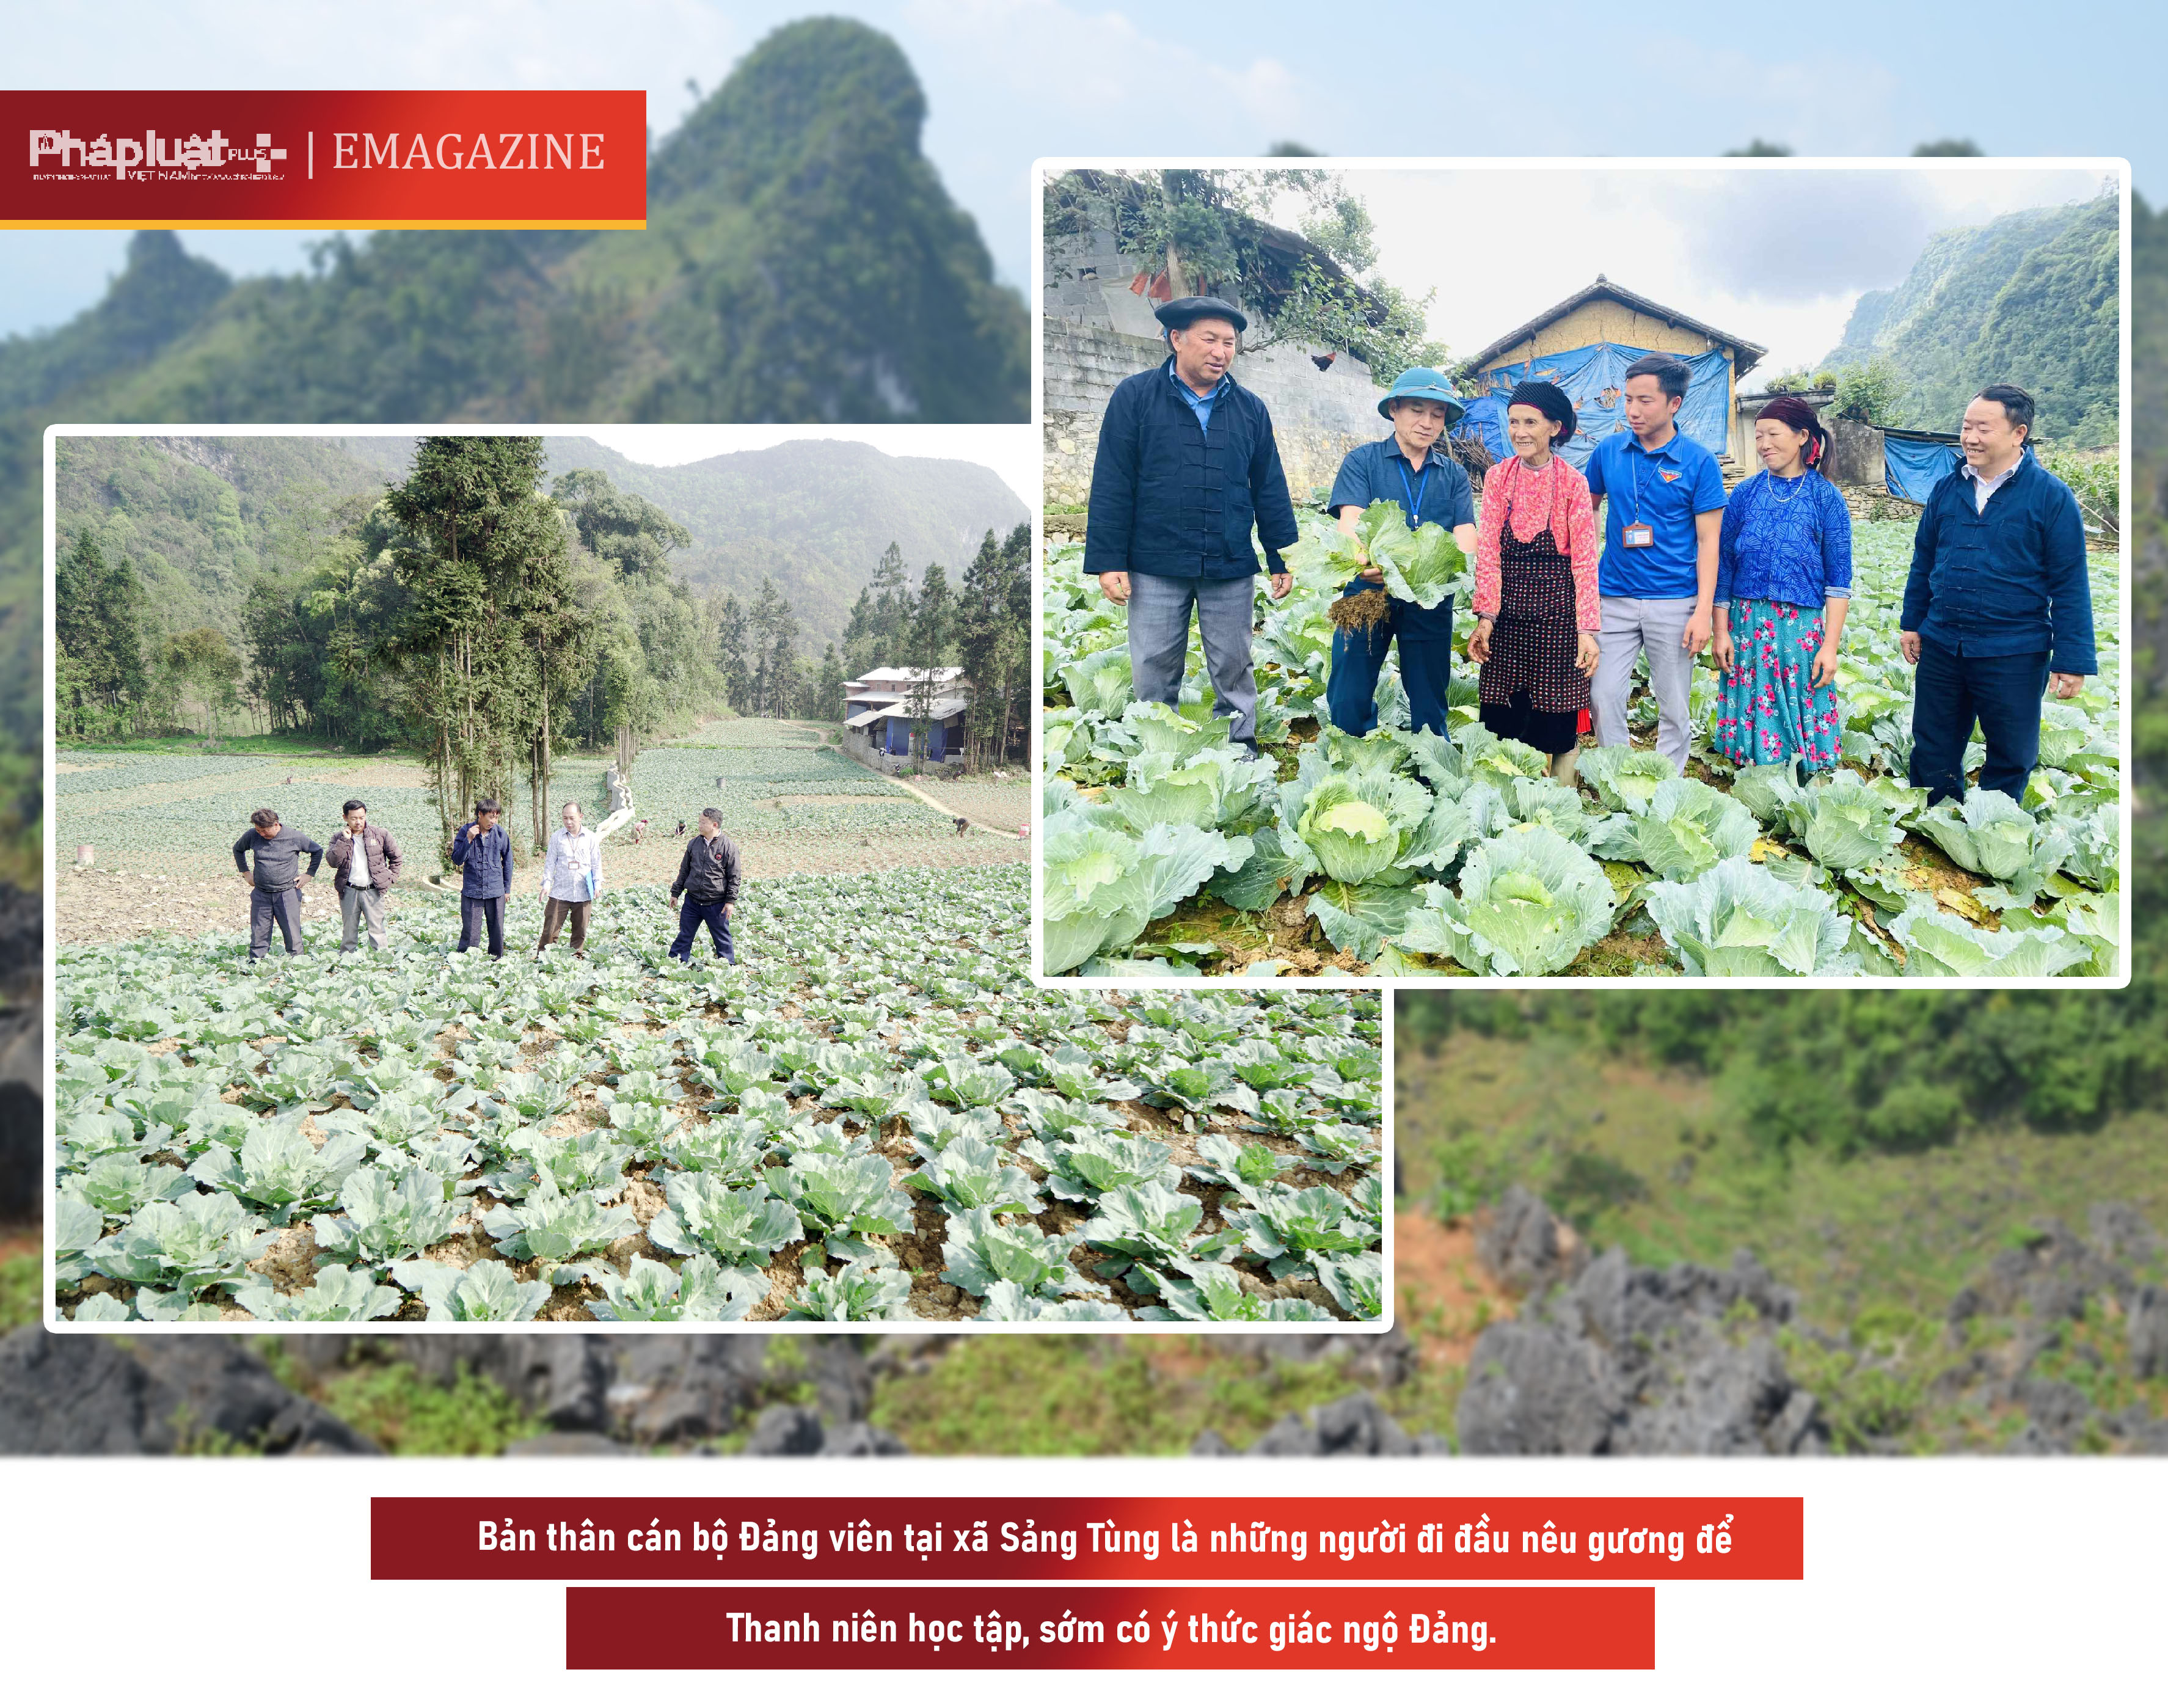 Lãnh đạo xã Sảng Tủng kiểm tra khu vực trồng cải bắp ở thôn thôn Séo Lủng B.